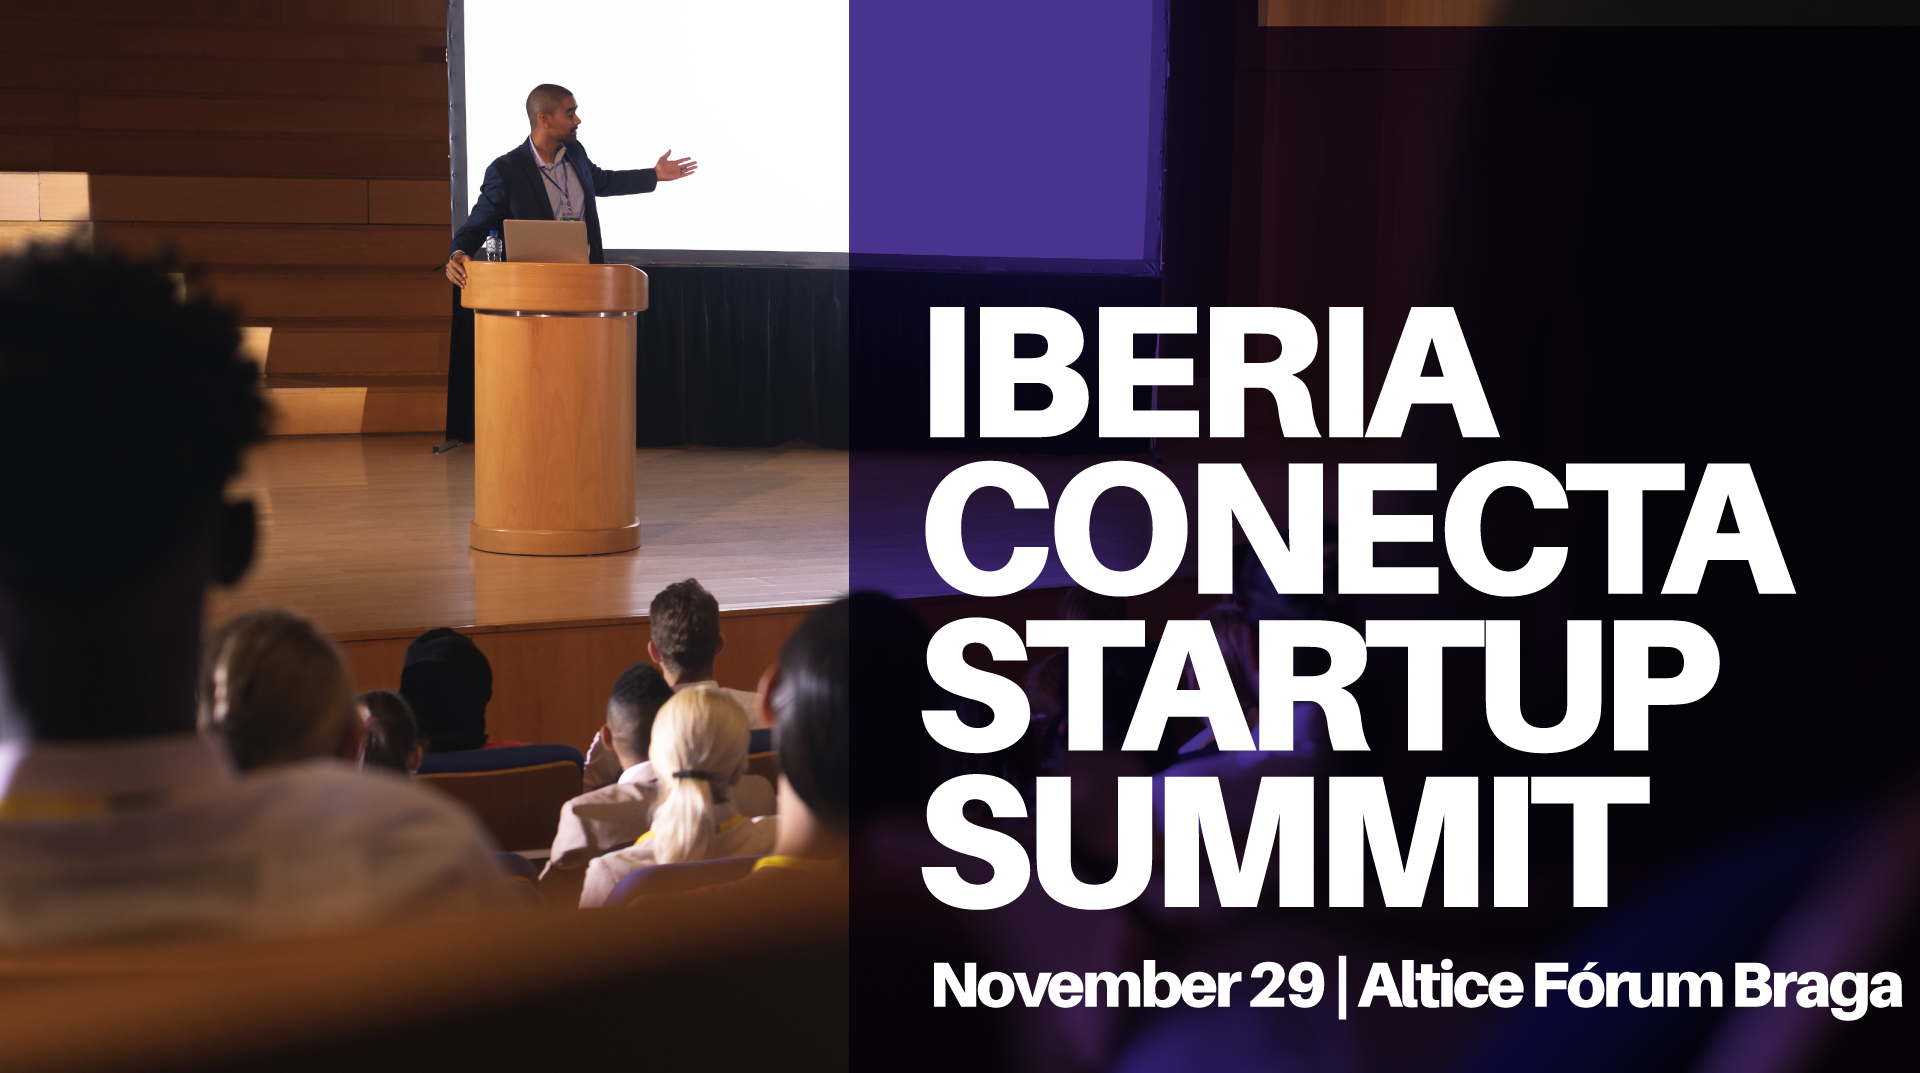 Iberia Conecta Startup Summit at Altice Fórum Braga